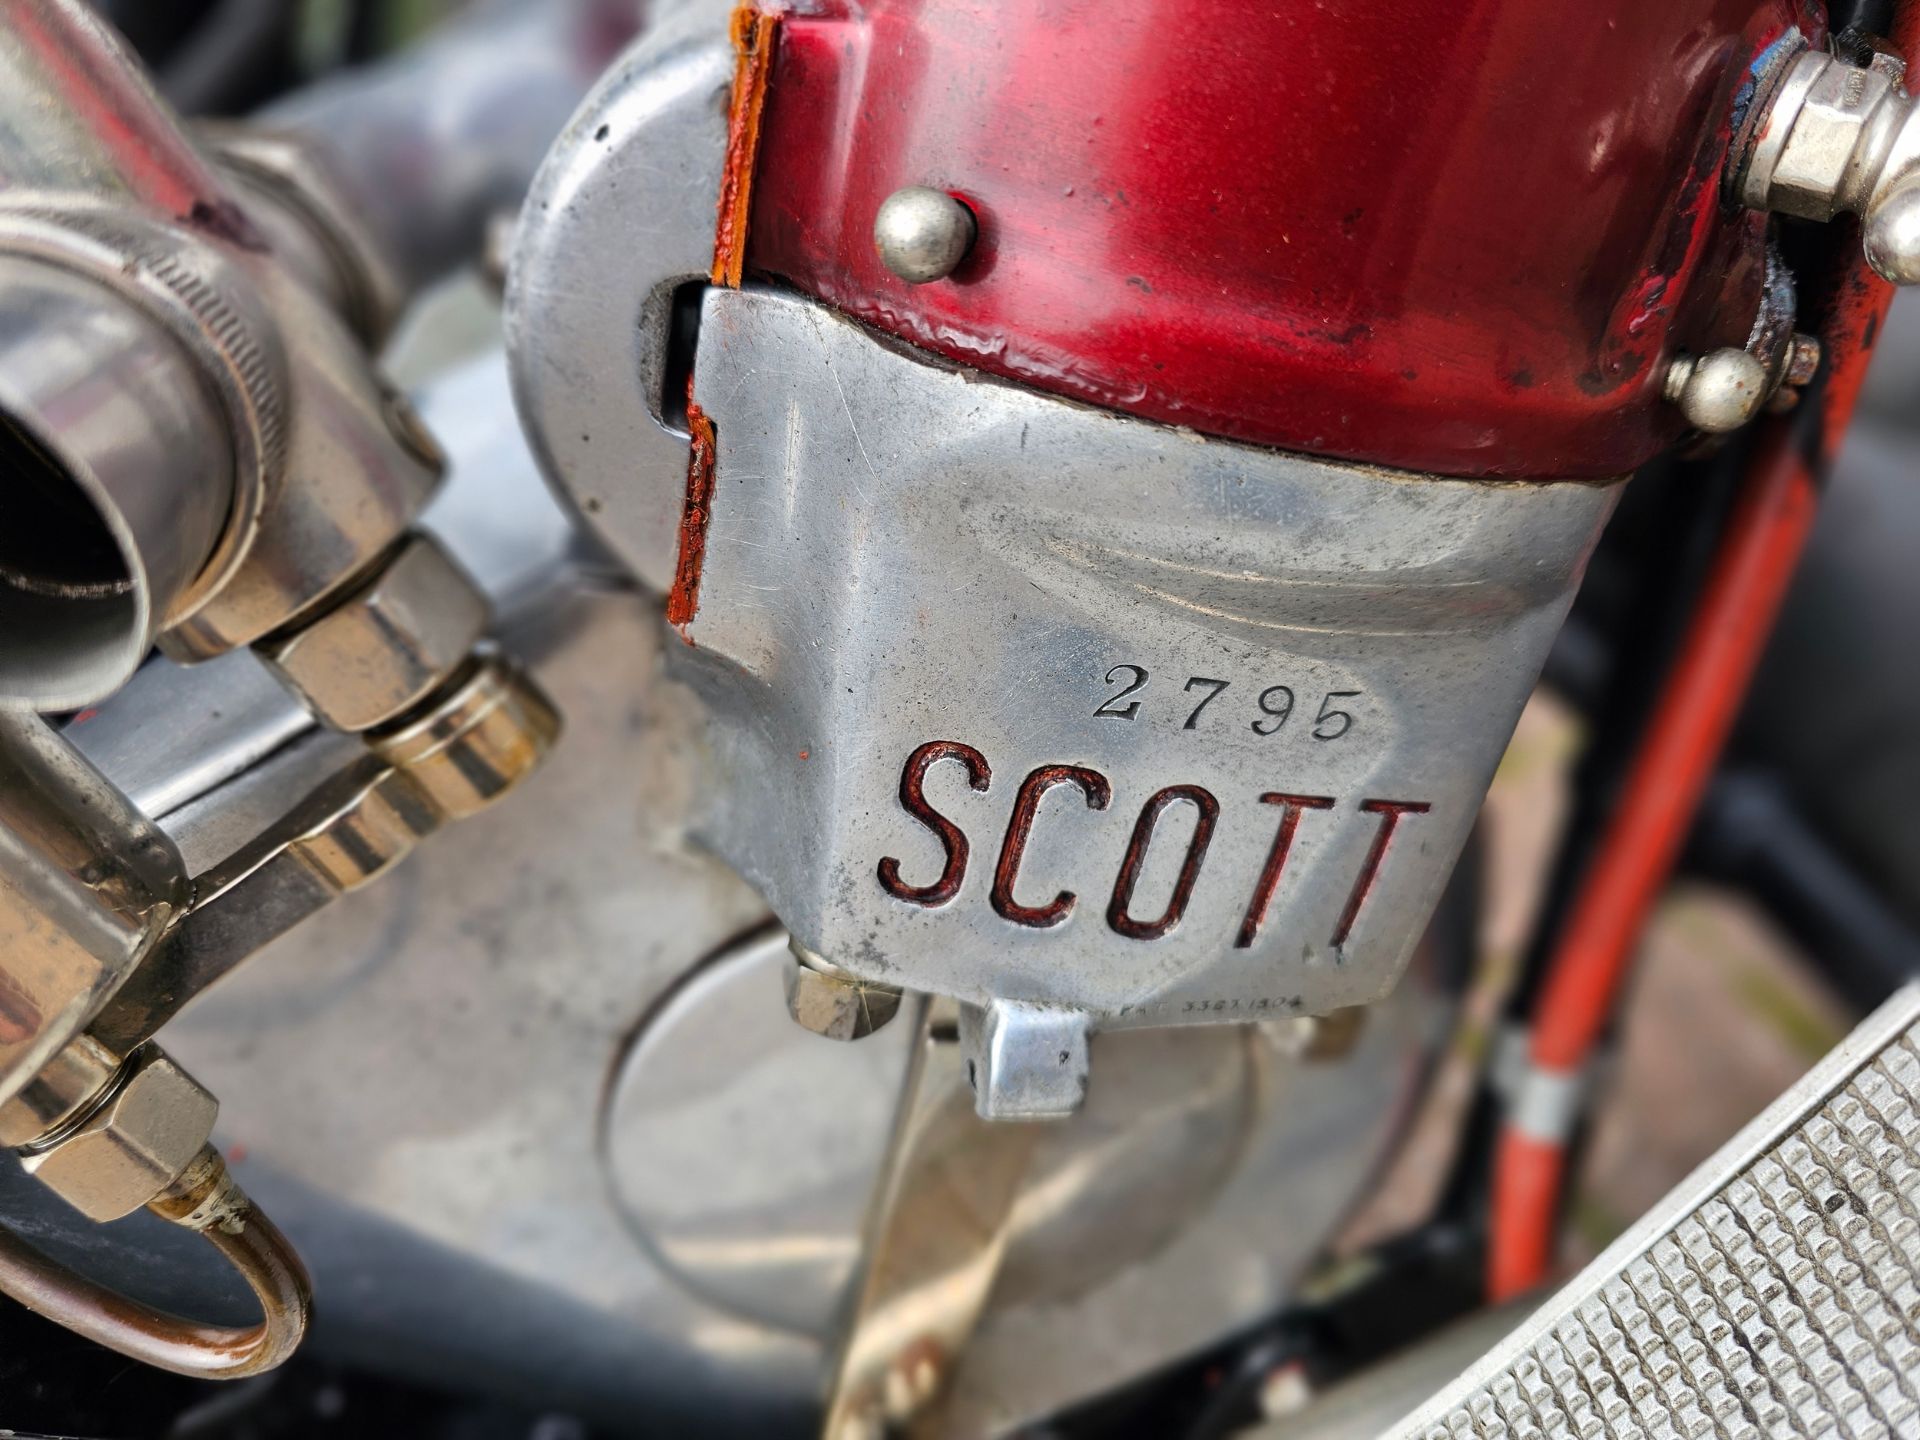 1914 Scott, 532cc. Registration number SV 7618 (non transferrable). Frame number 657. Engine - Image 13 of 23